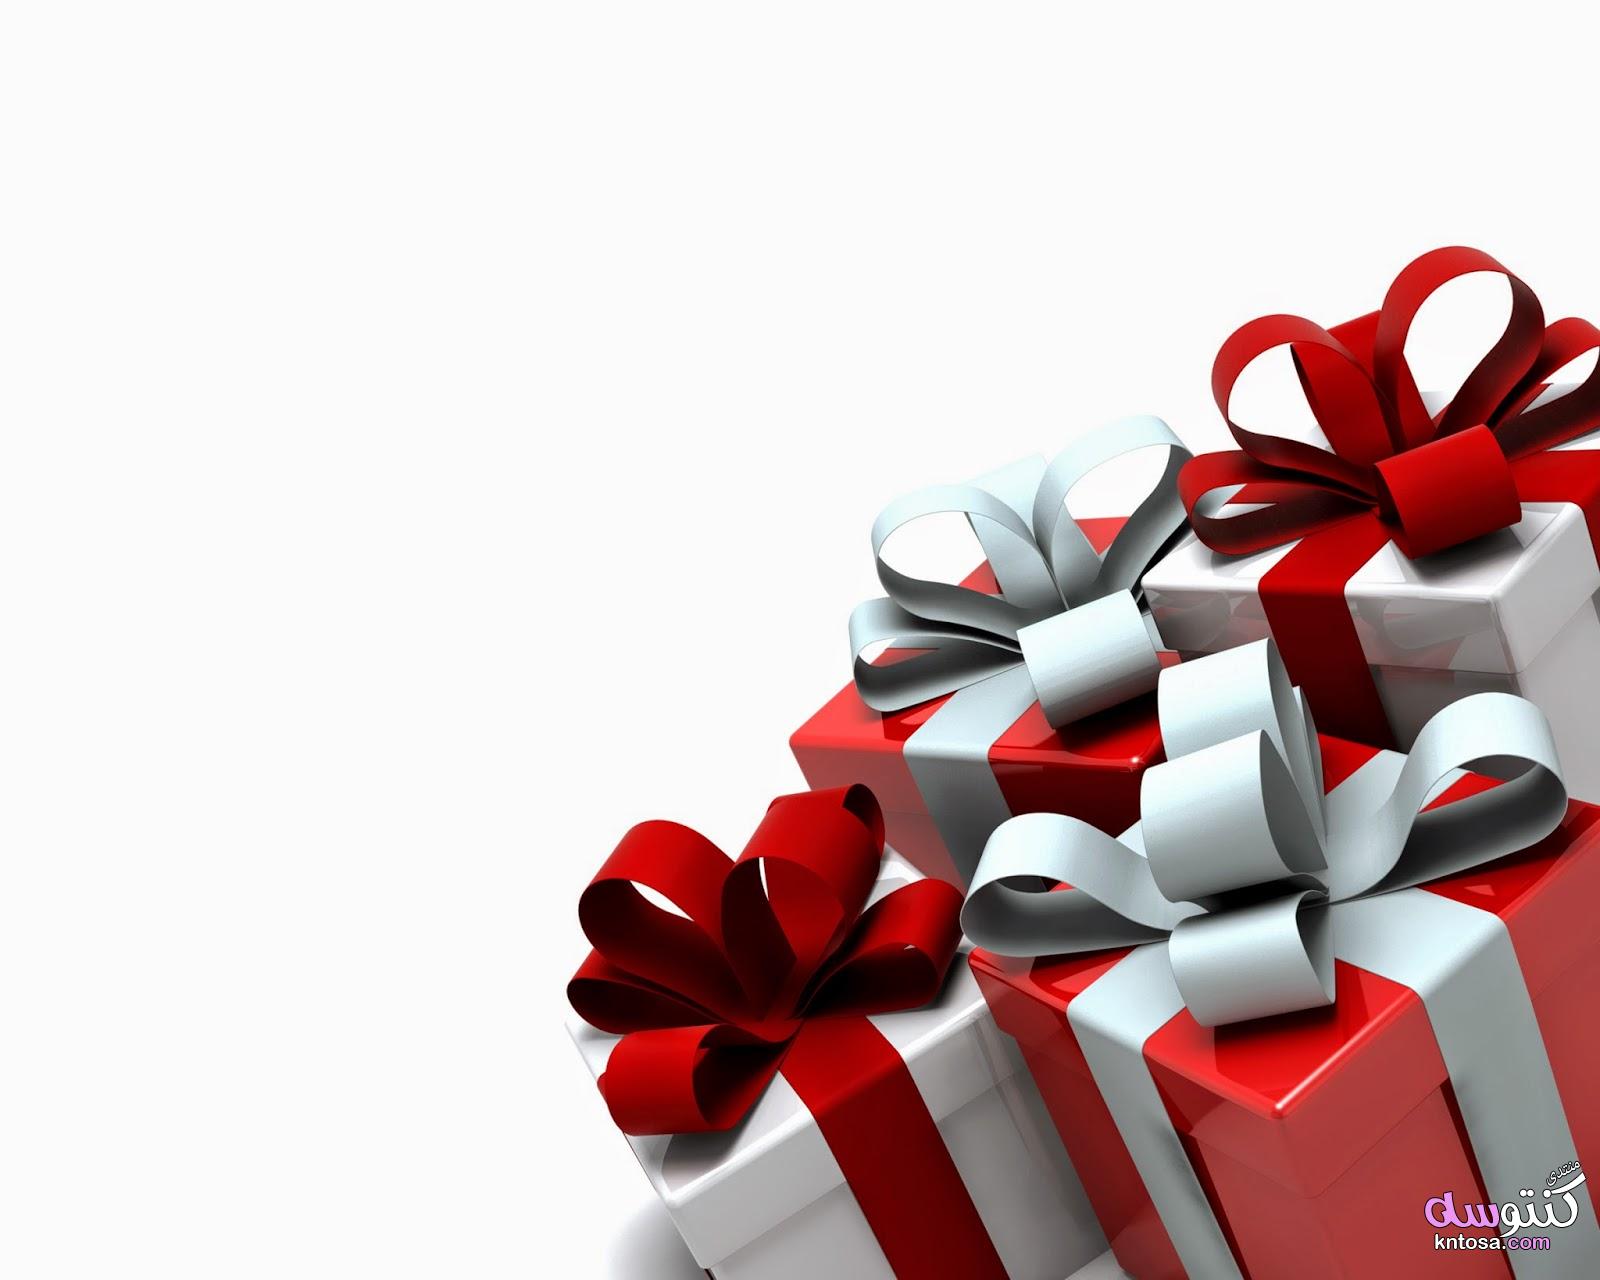 صور هدايا الكريسماس 2019,صور علب هدايا للكريسماس,افكار تقديم الهدايافى الكريسماس,صور هدايا رأس السنه kntosa.com_24_18_154